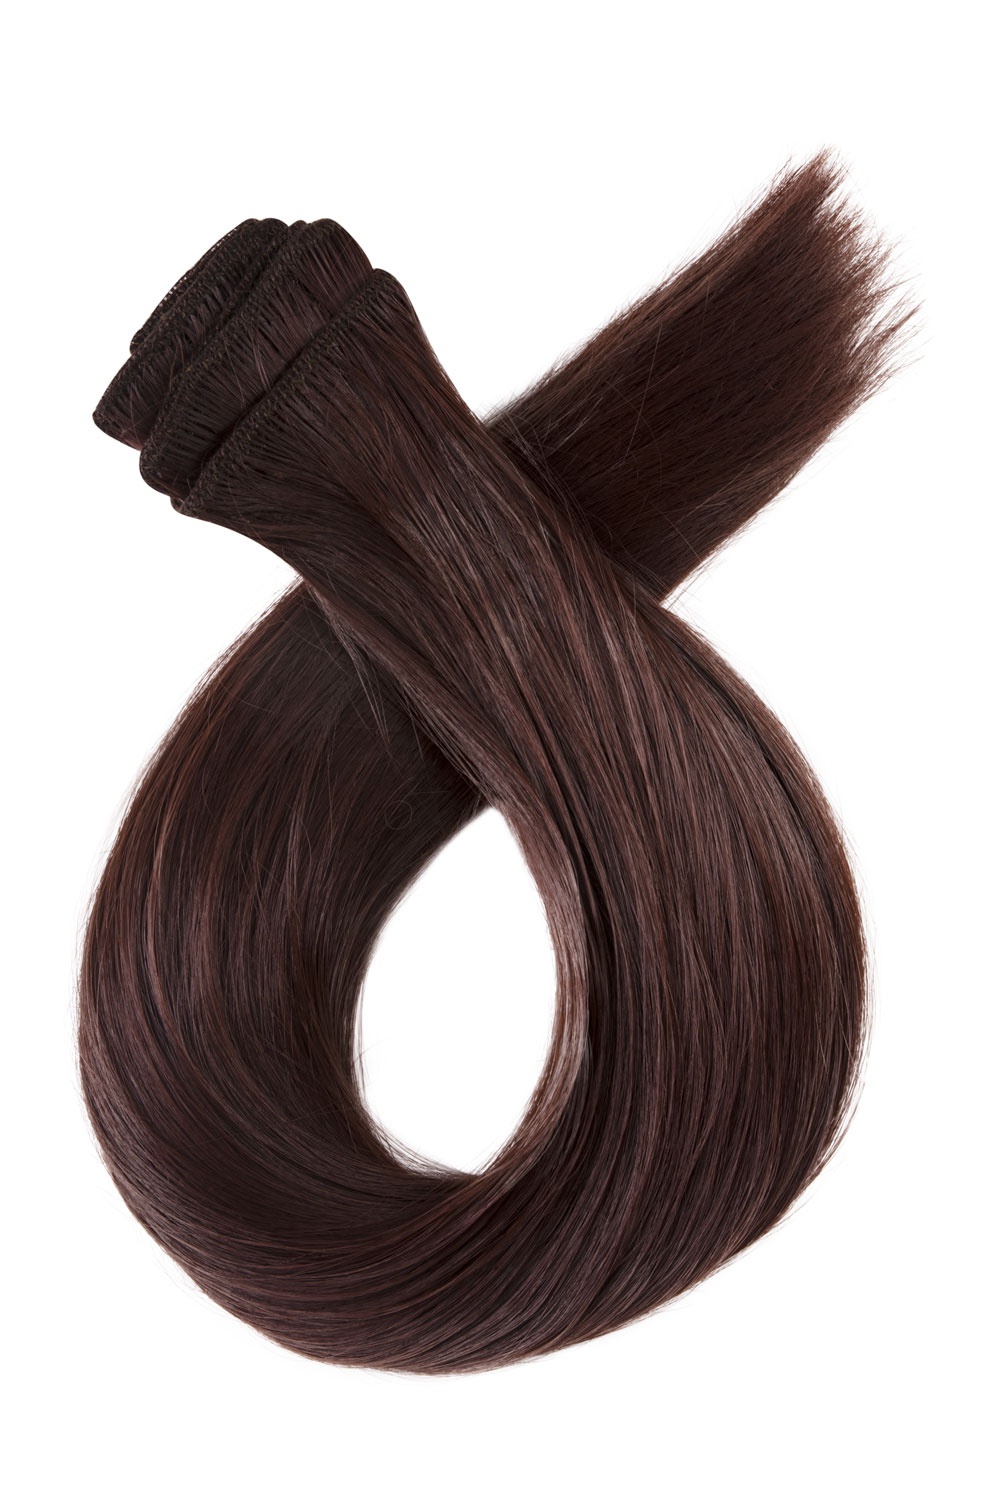 Tmavé červenohnedé clip in vlasy, 70cm, 180g, farba 33